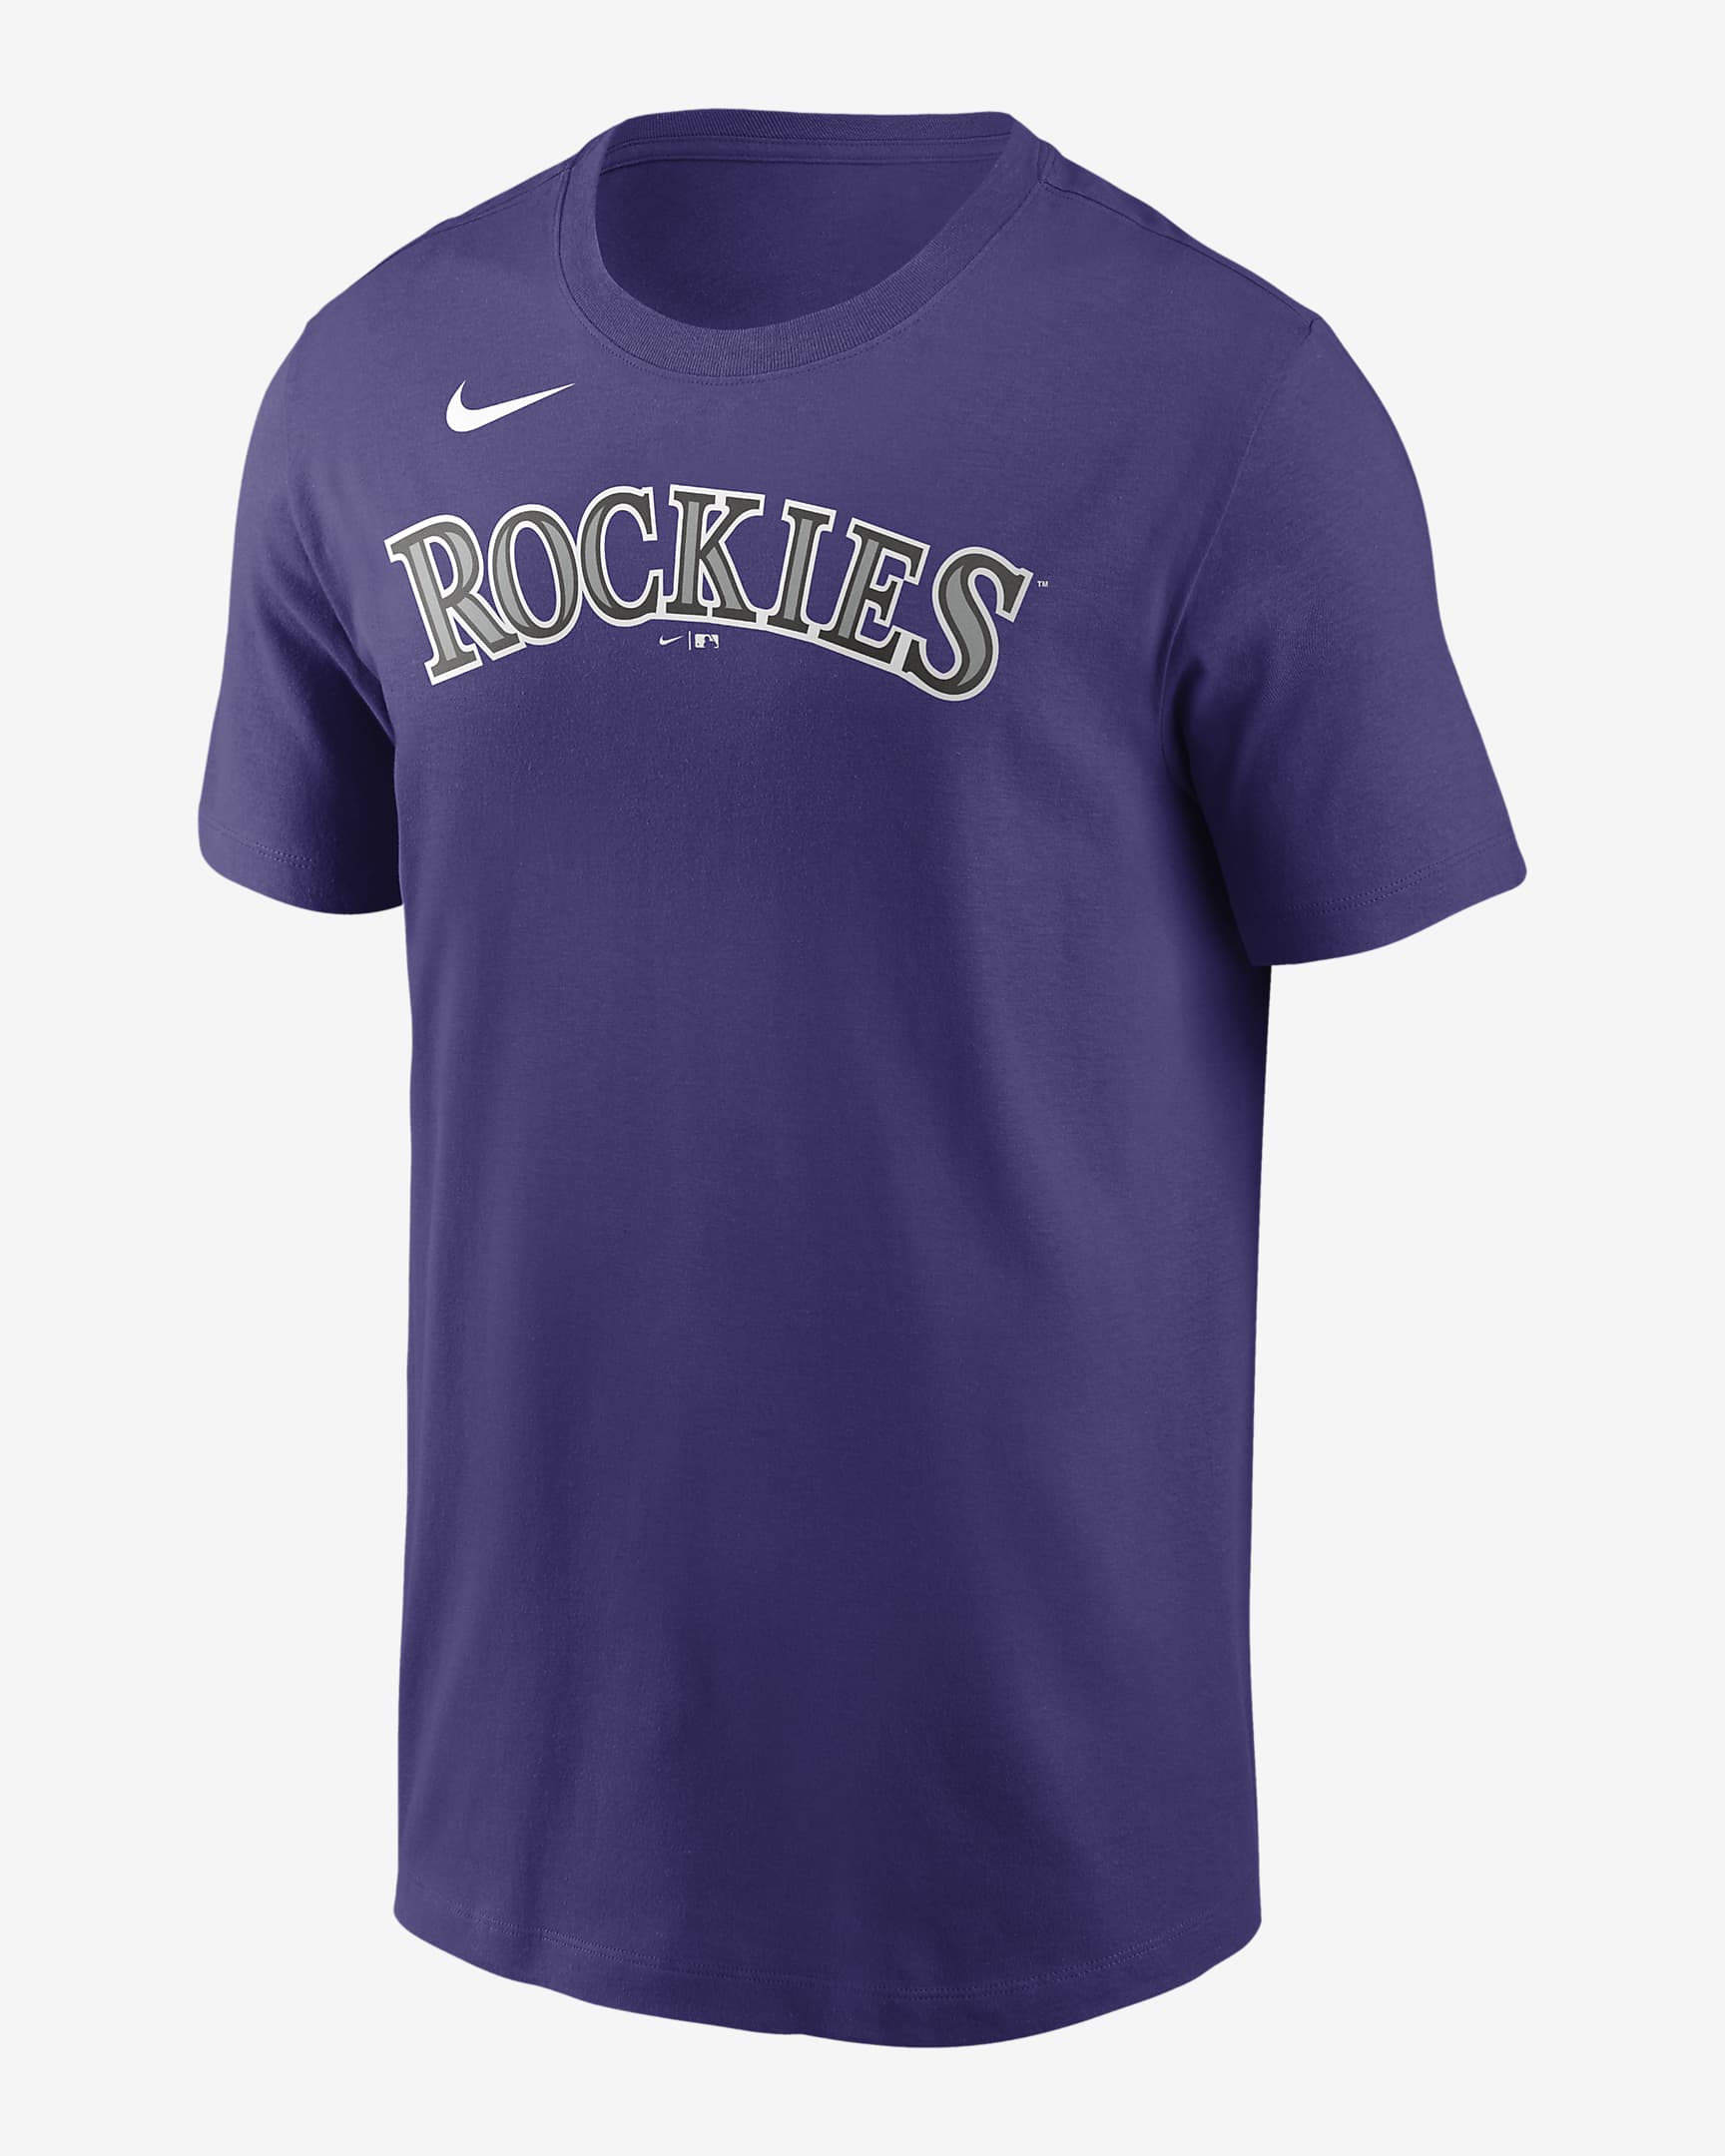 MLB Colorado Rockies (Charlie Blackmon) Men's T-Shirt. Nike.com